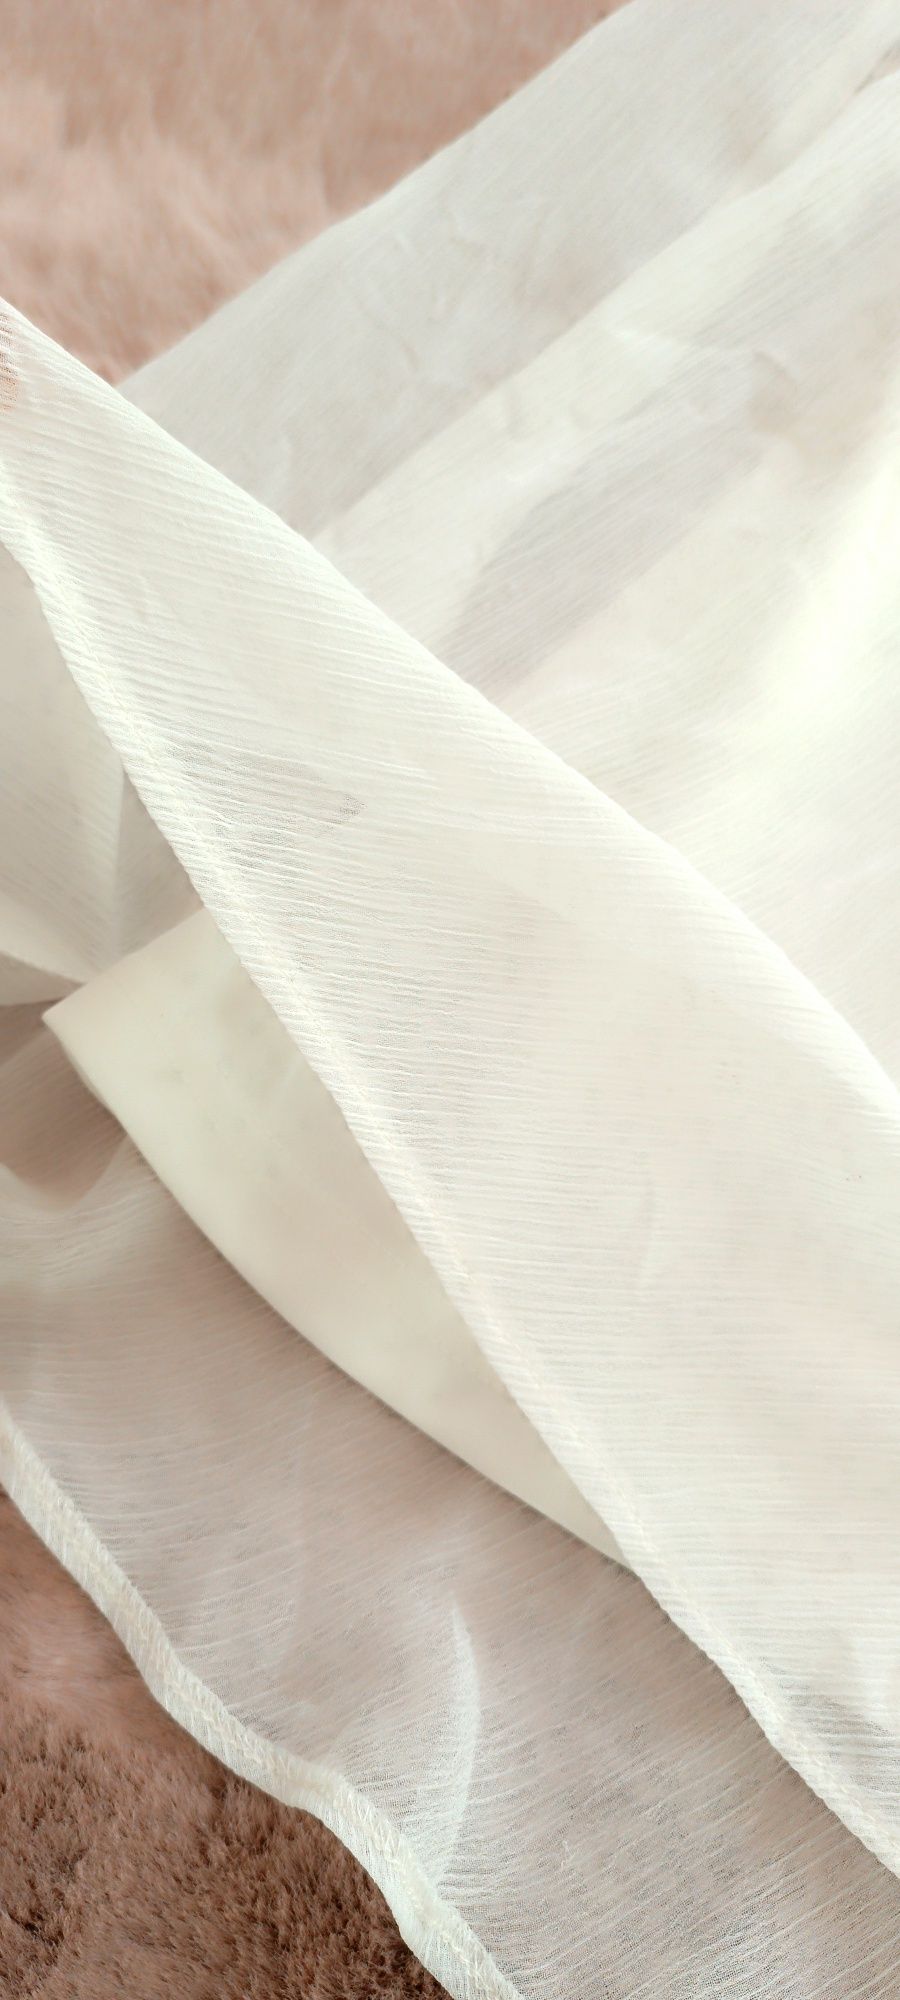 Biała zwiewna sukienka letnia wizytowa elegancka midi długa XS S 34 36